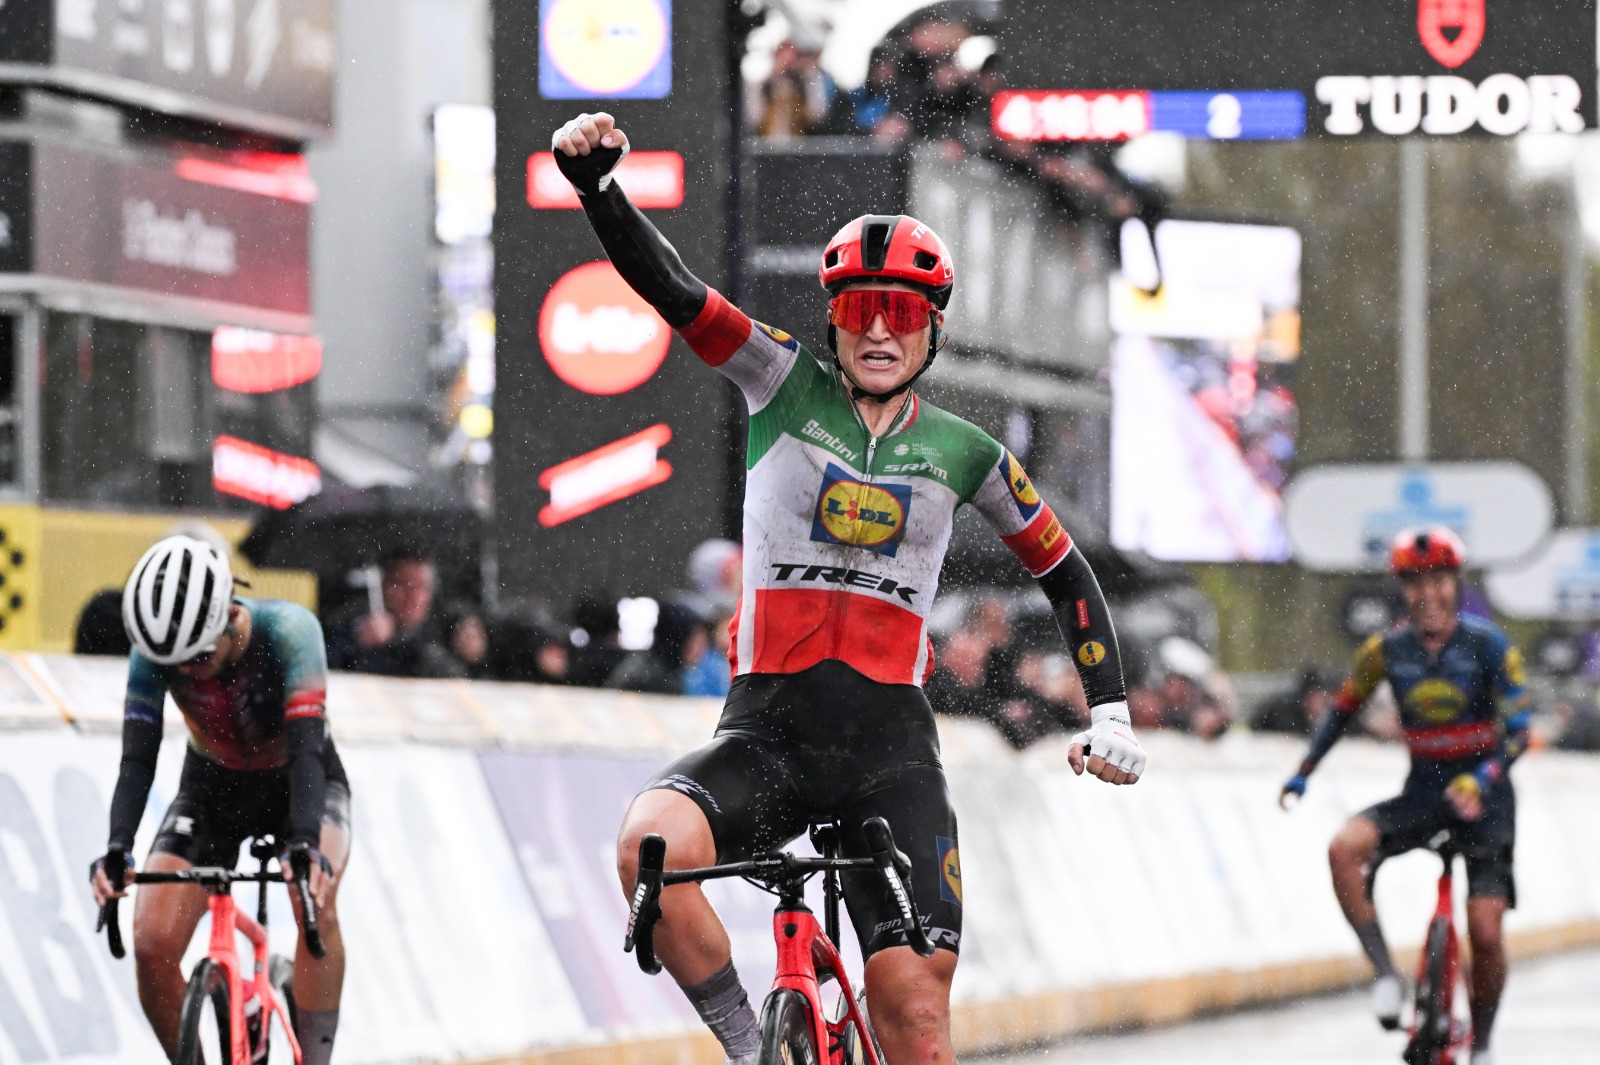 Brilla il Tricolore al Giro delle Fiandre: Elisa Longo Borghini in trionfo tra le donne!